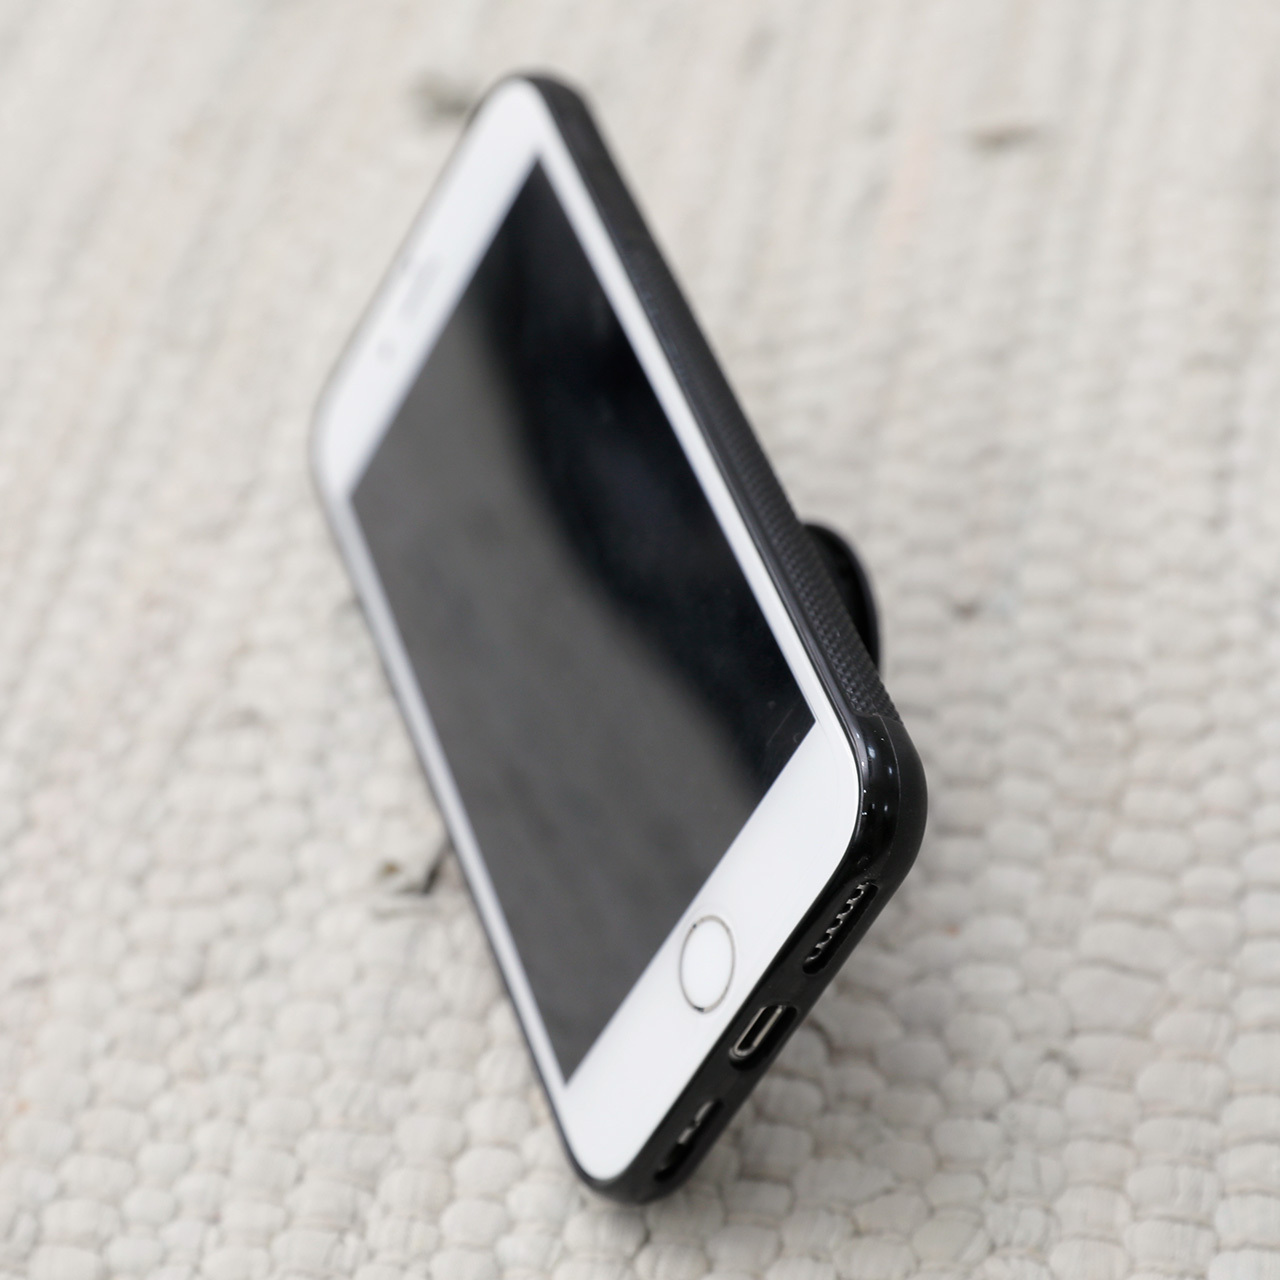 写真でオーダーメイド カスタム オリジナル スマホグリップ ブラック ホワイト 送料込み 送料無料 スマホソケット Iphoneグリップ スタンド すまでこオンラインショップースマホの写真でオリジナルアイテム作成